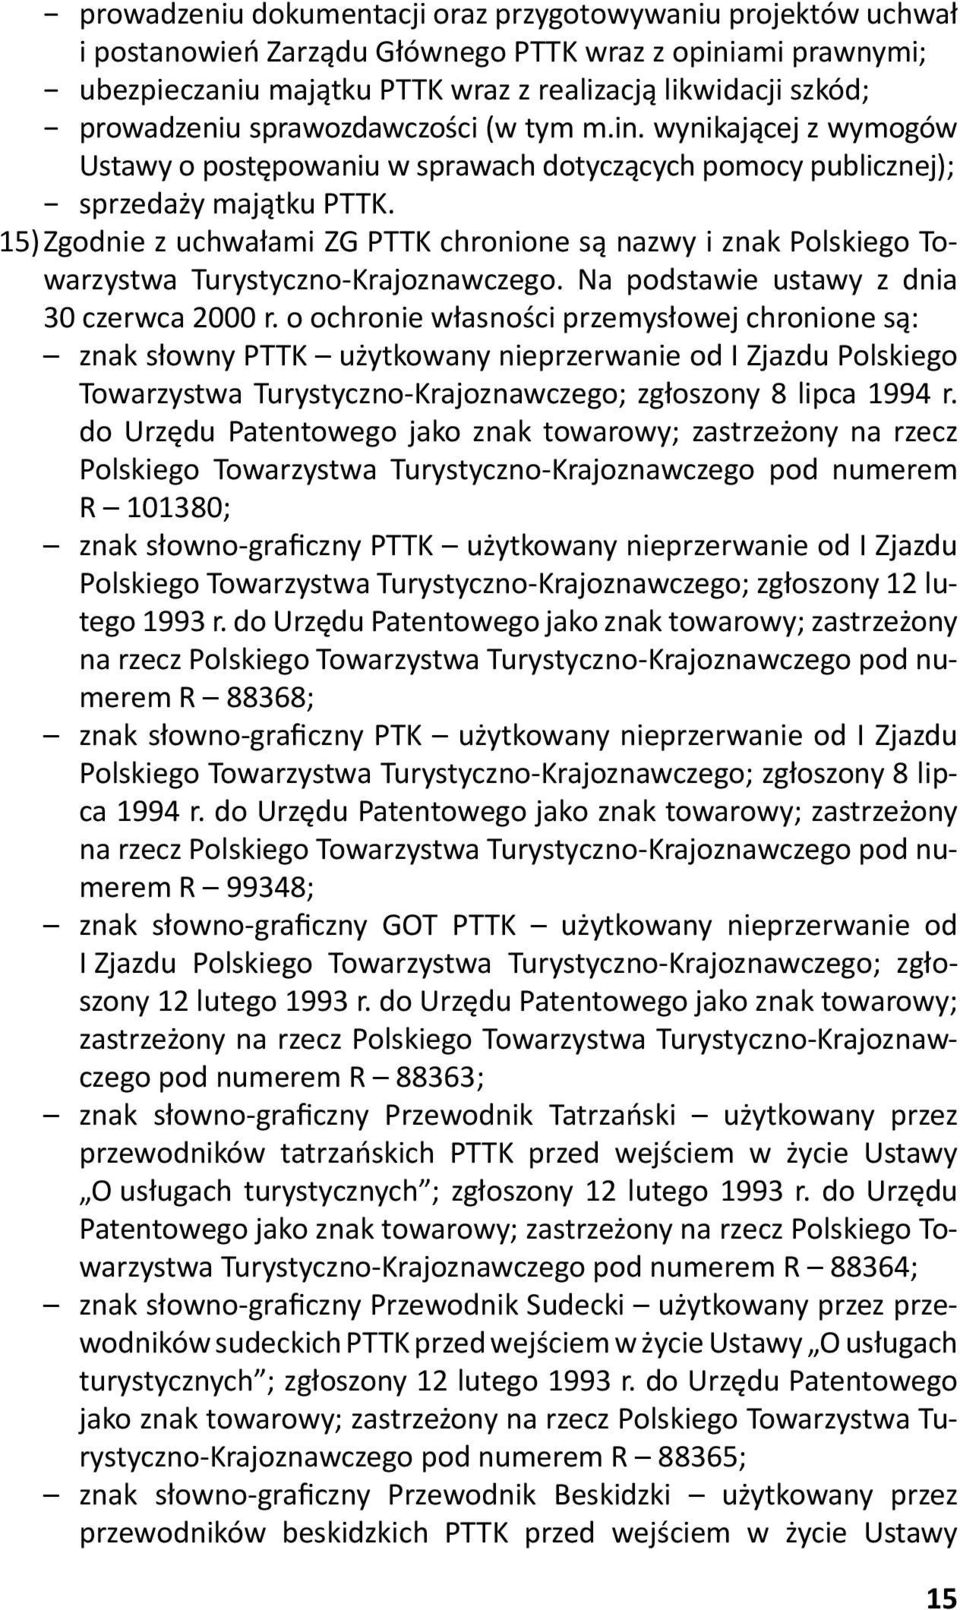 15) Zgodnie z uchwałami ZG PTTK chronione są nazwy i znak Polskiego Towarzystwa Turystyczno-Krajoznawczego. Na podstawie ustawy z dnia 30 czerwca 2000 r.